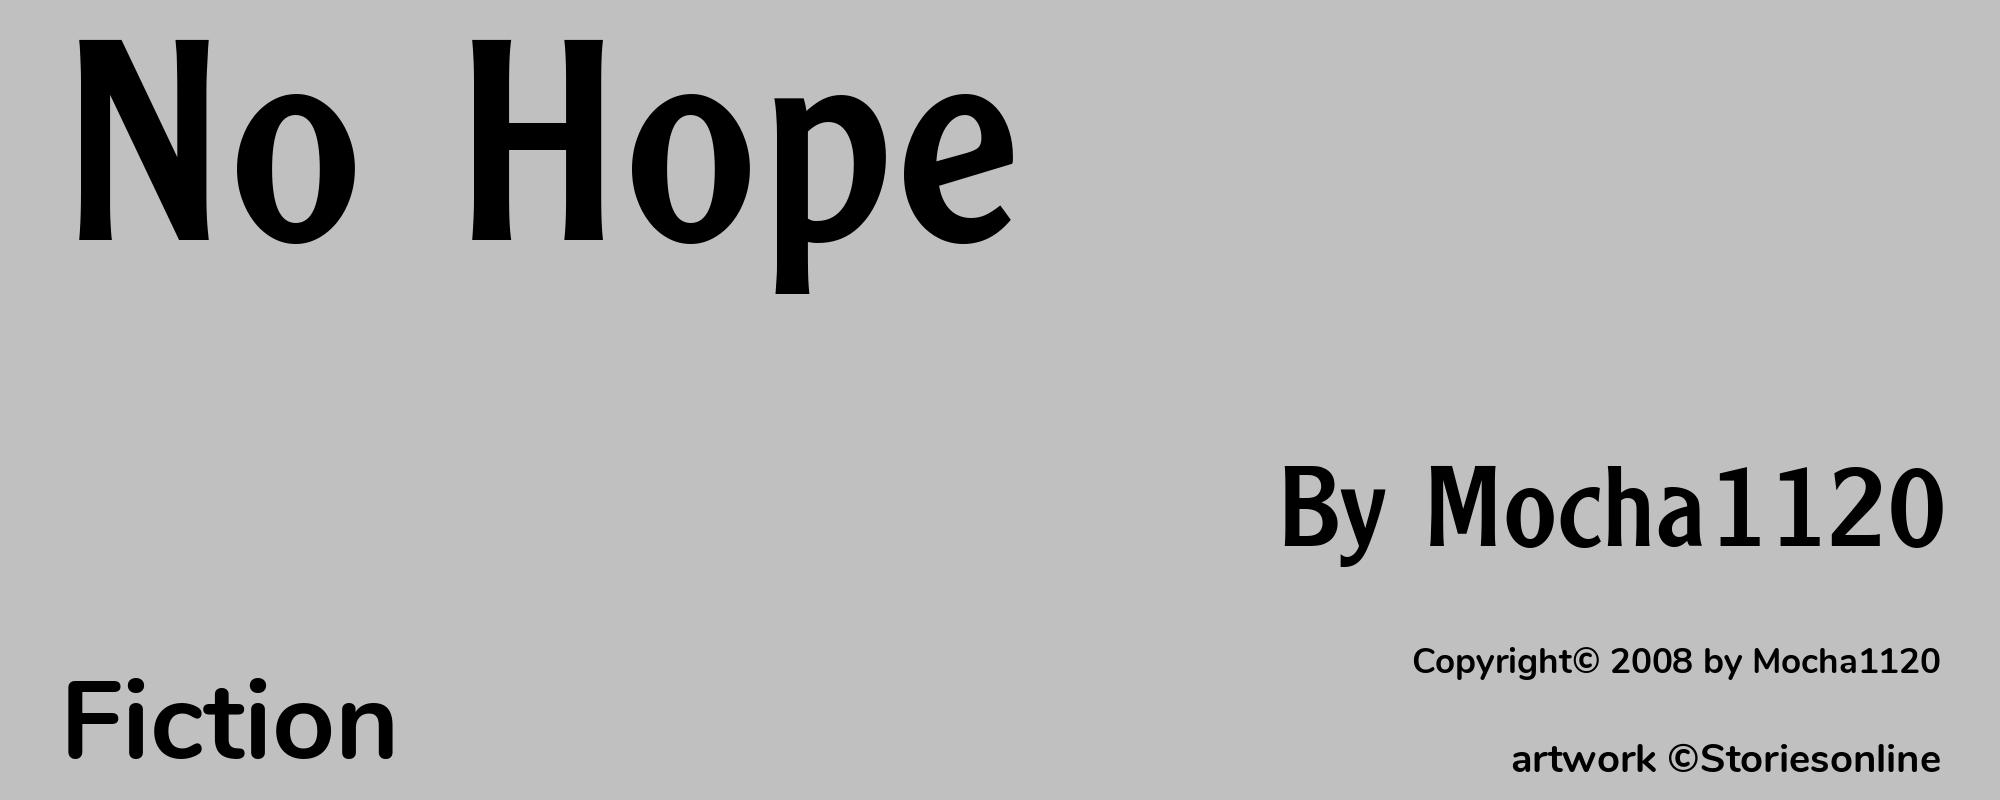 No Hope - Cover